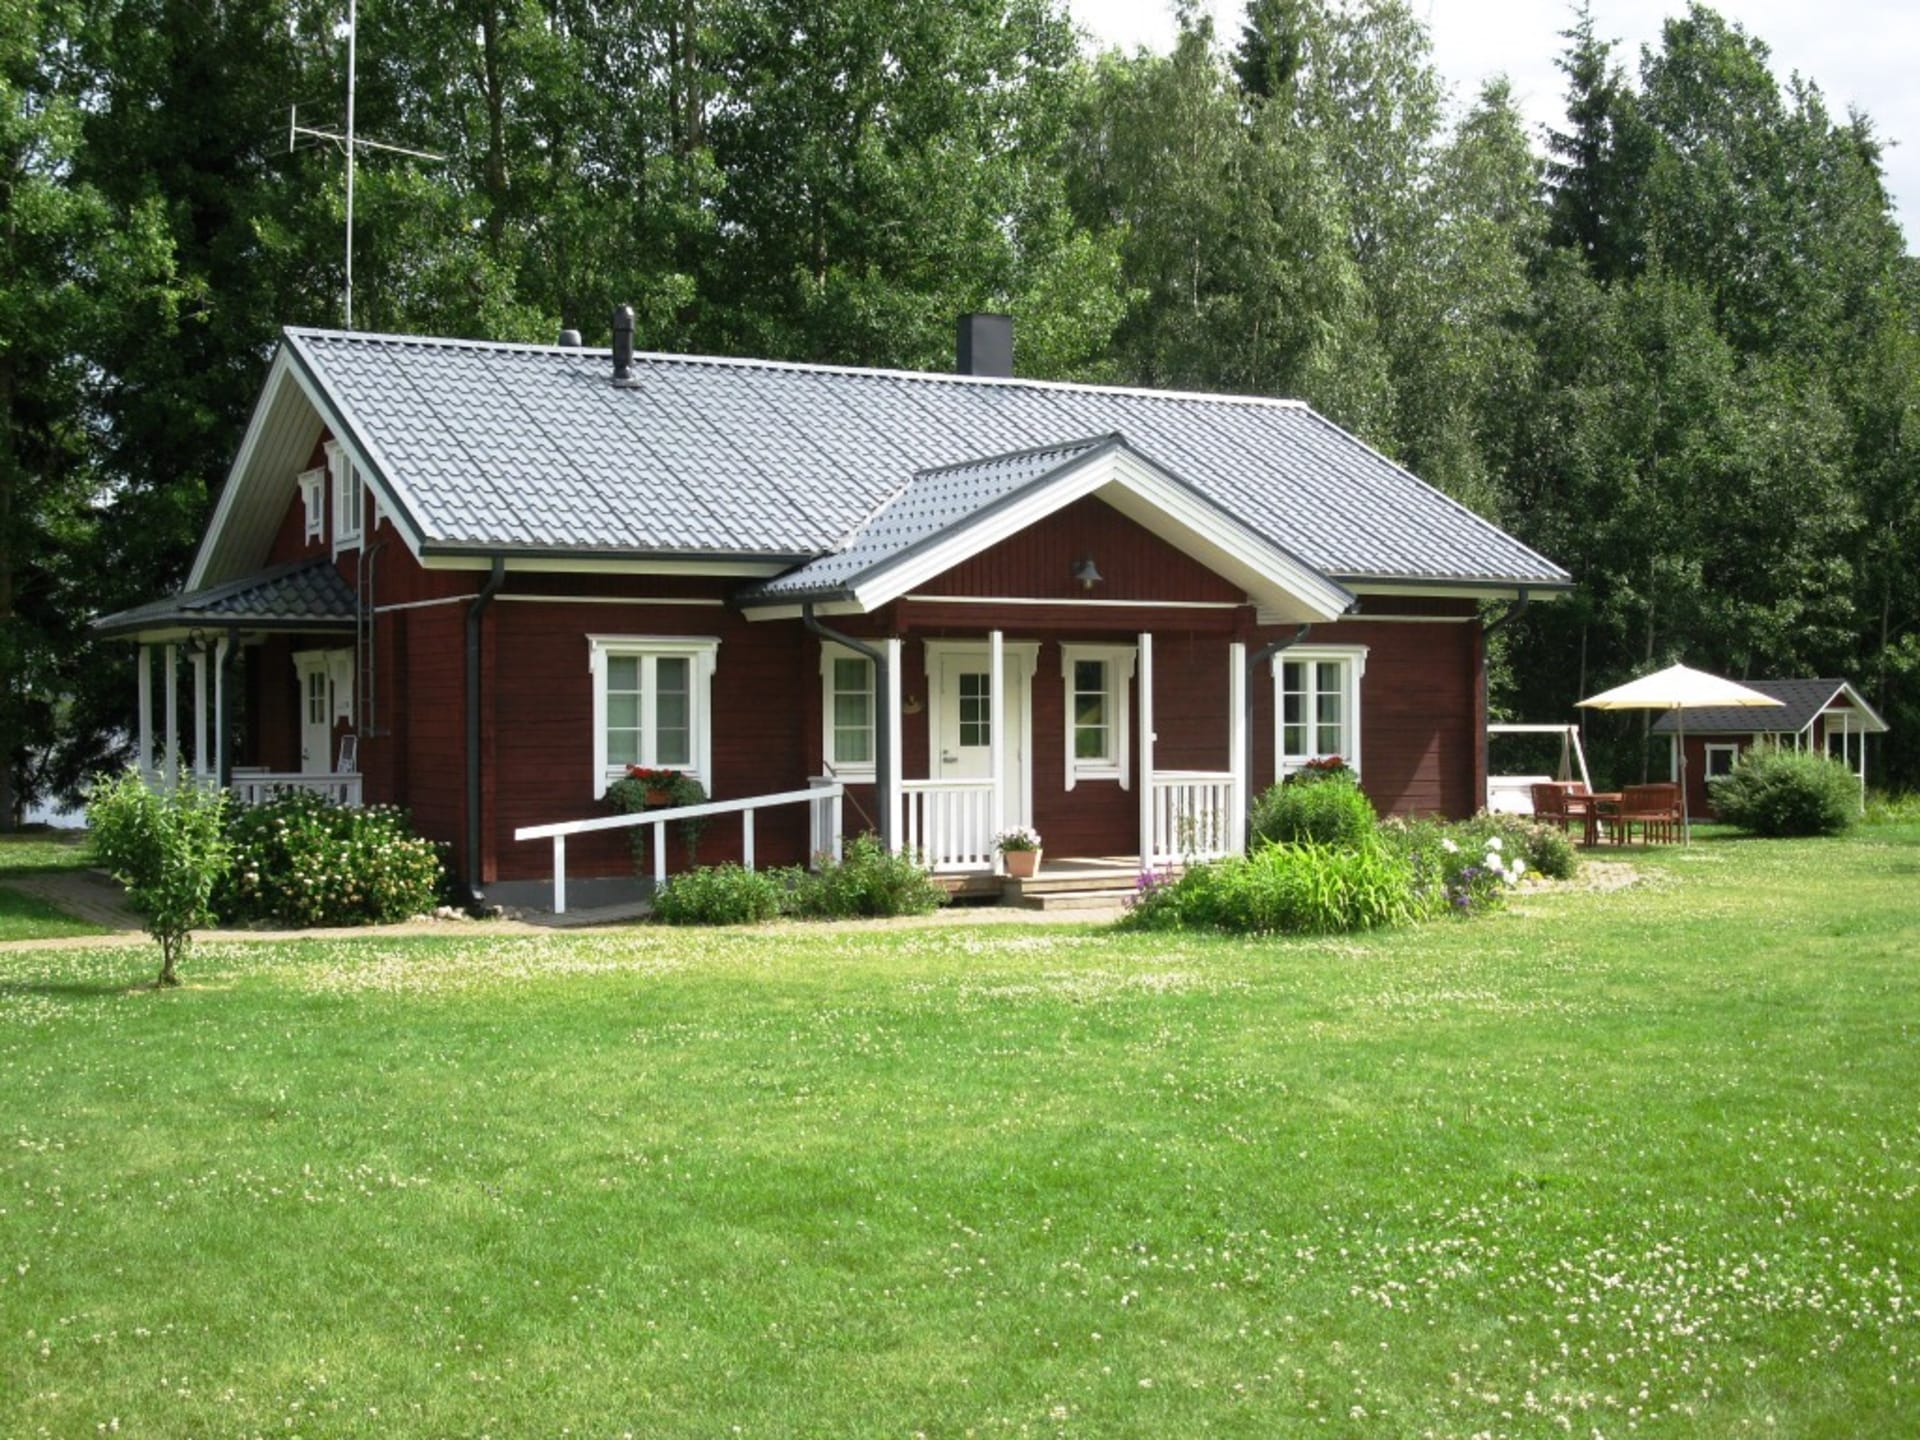 Villa Hermanni, Kihniö - on the shore of Lake Kankari.